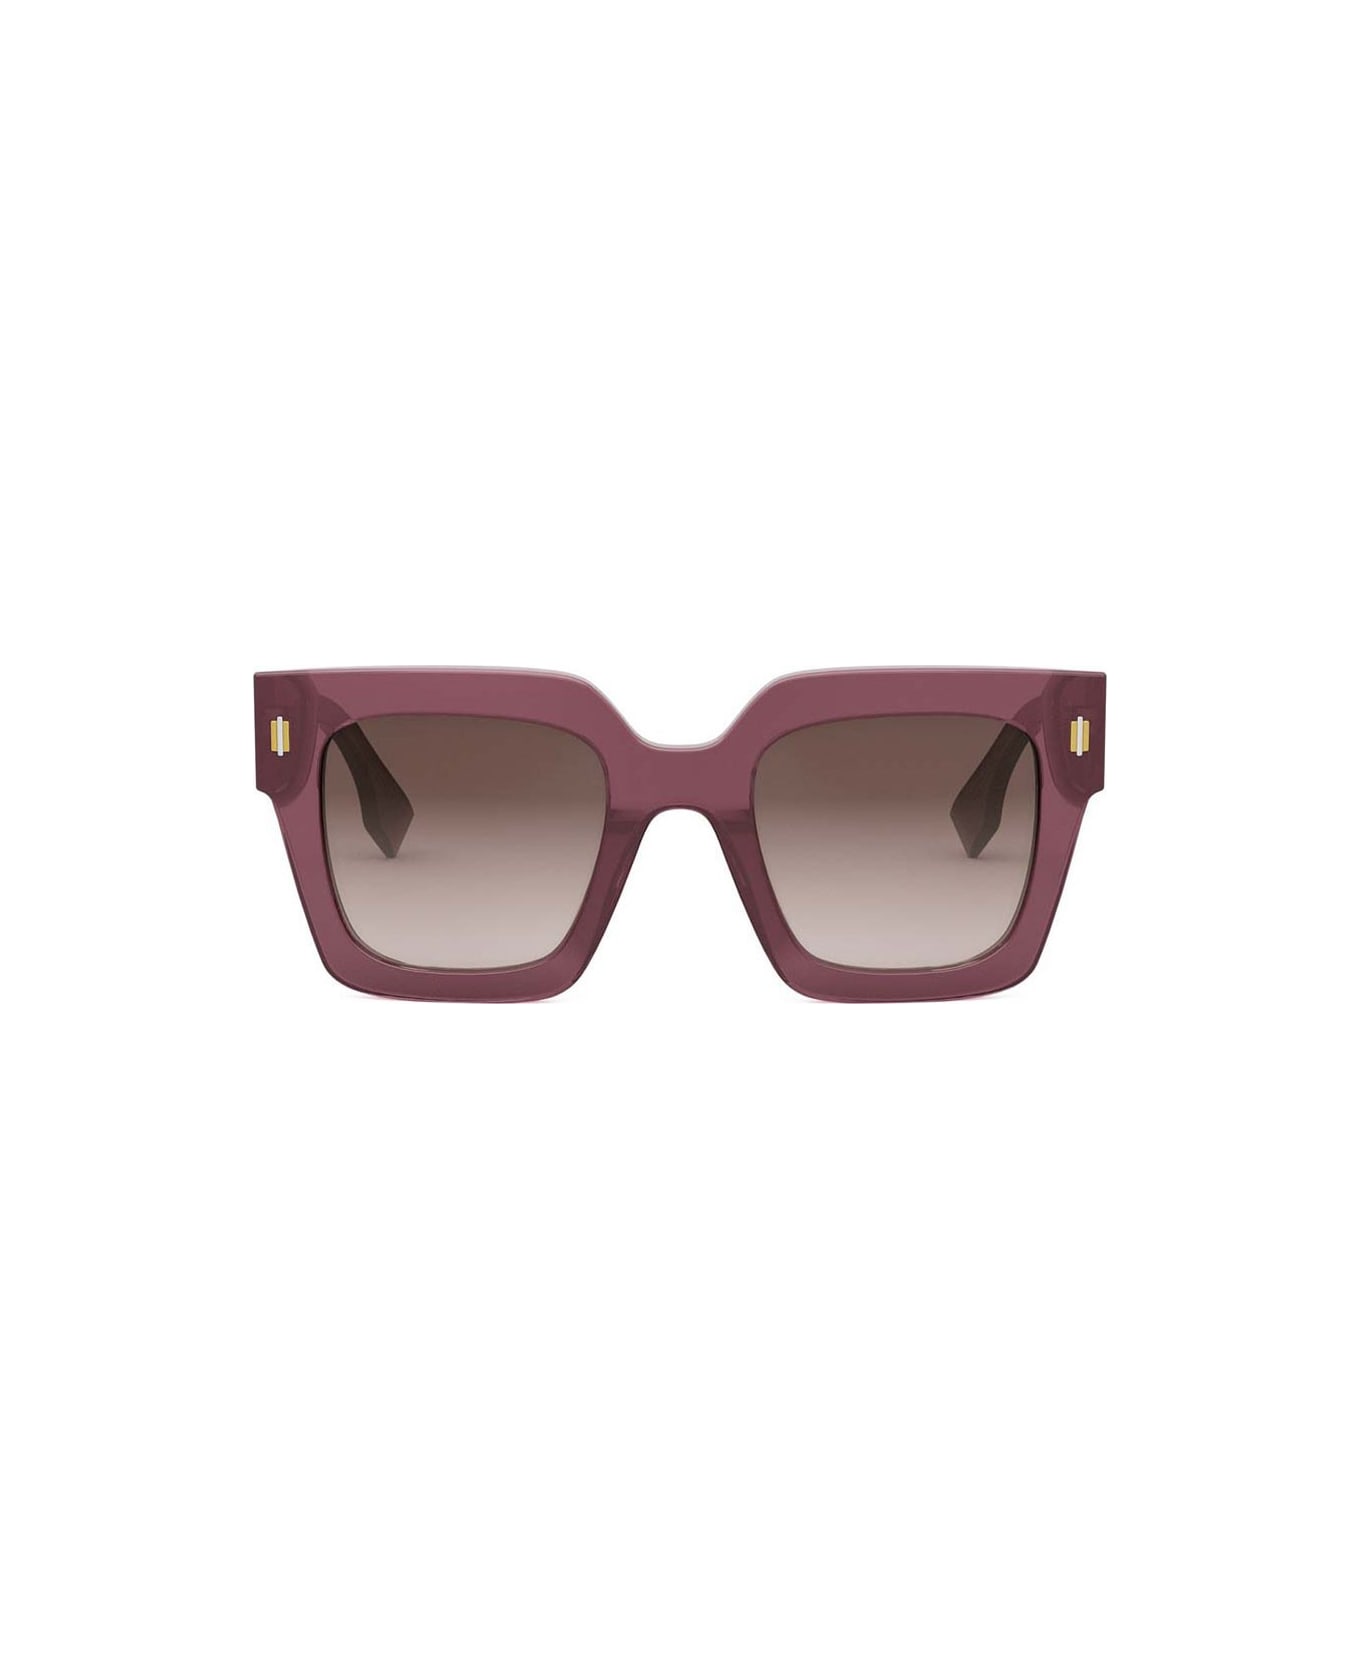 Fendi Eyewear Sunglasses - Viola/Marrone sfumato